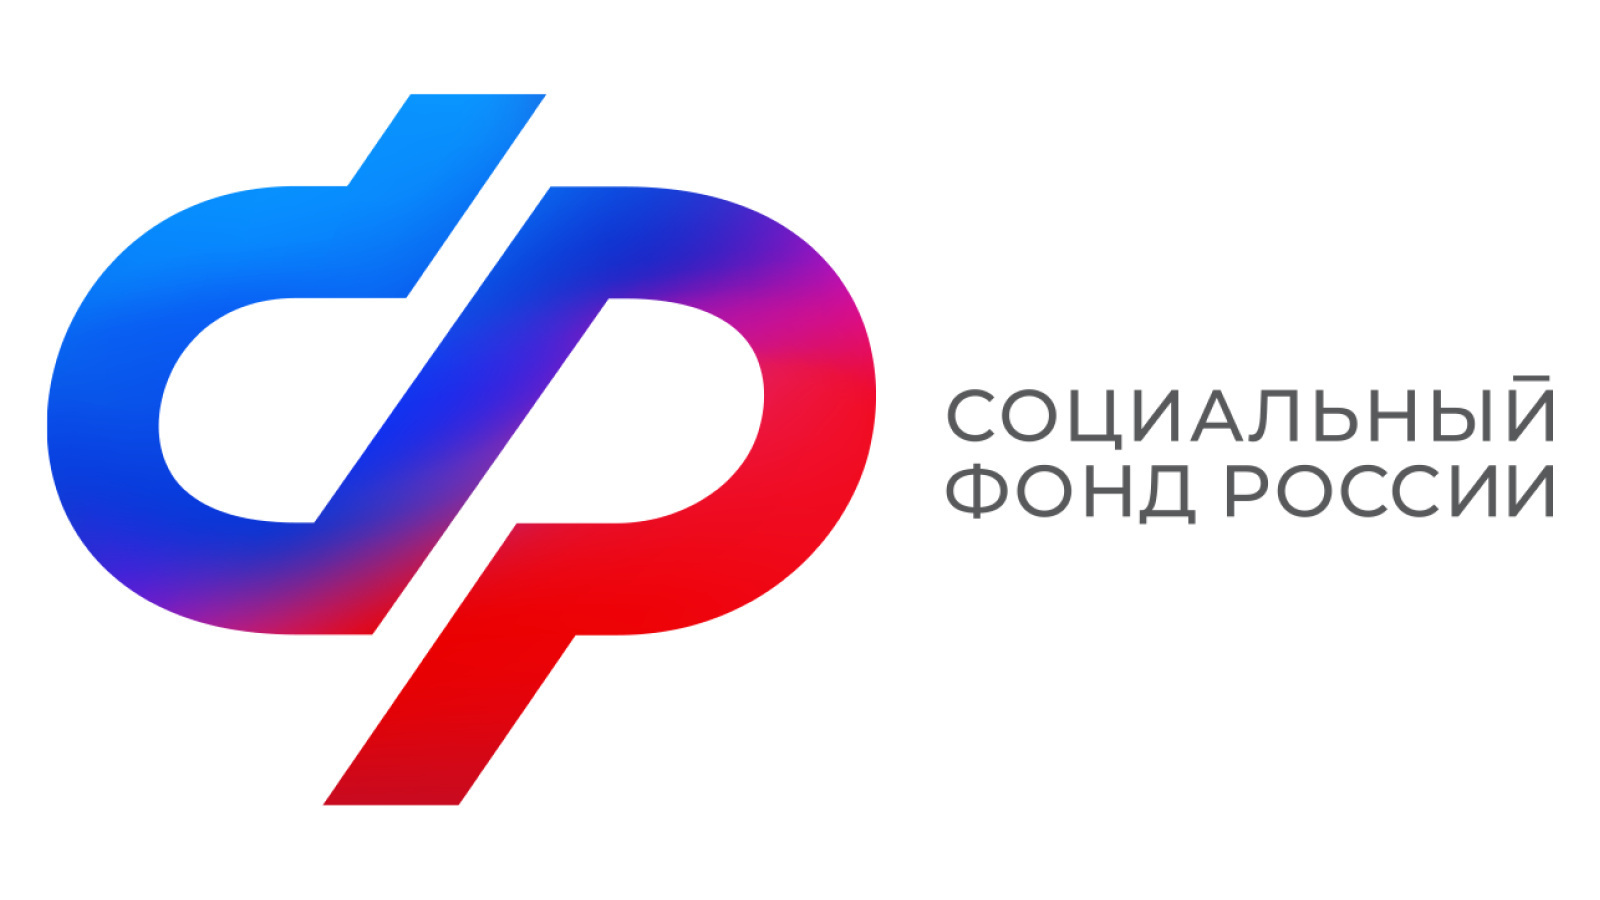 Сайт нового фонда. Социальный фонд России логотип. Логотип социального фонда России с 2023 года. Фонд пенсионного и социального страхования Российской Федерации.